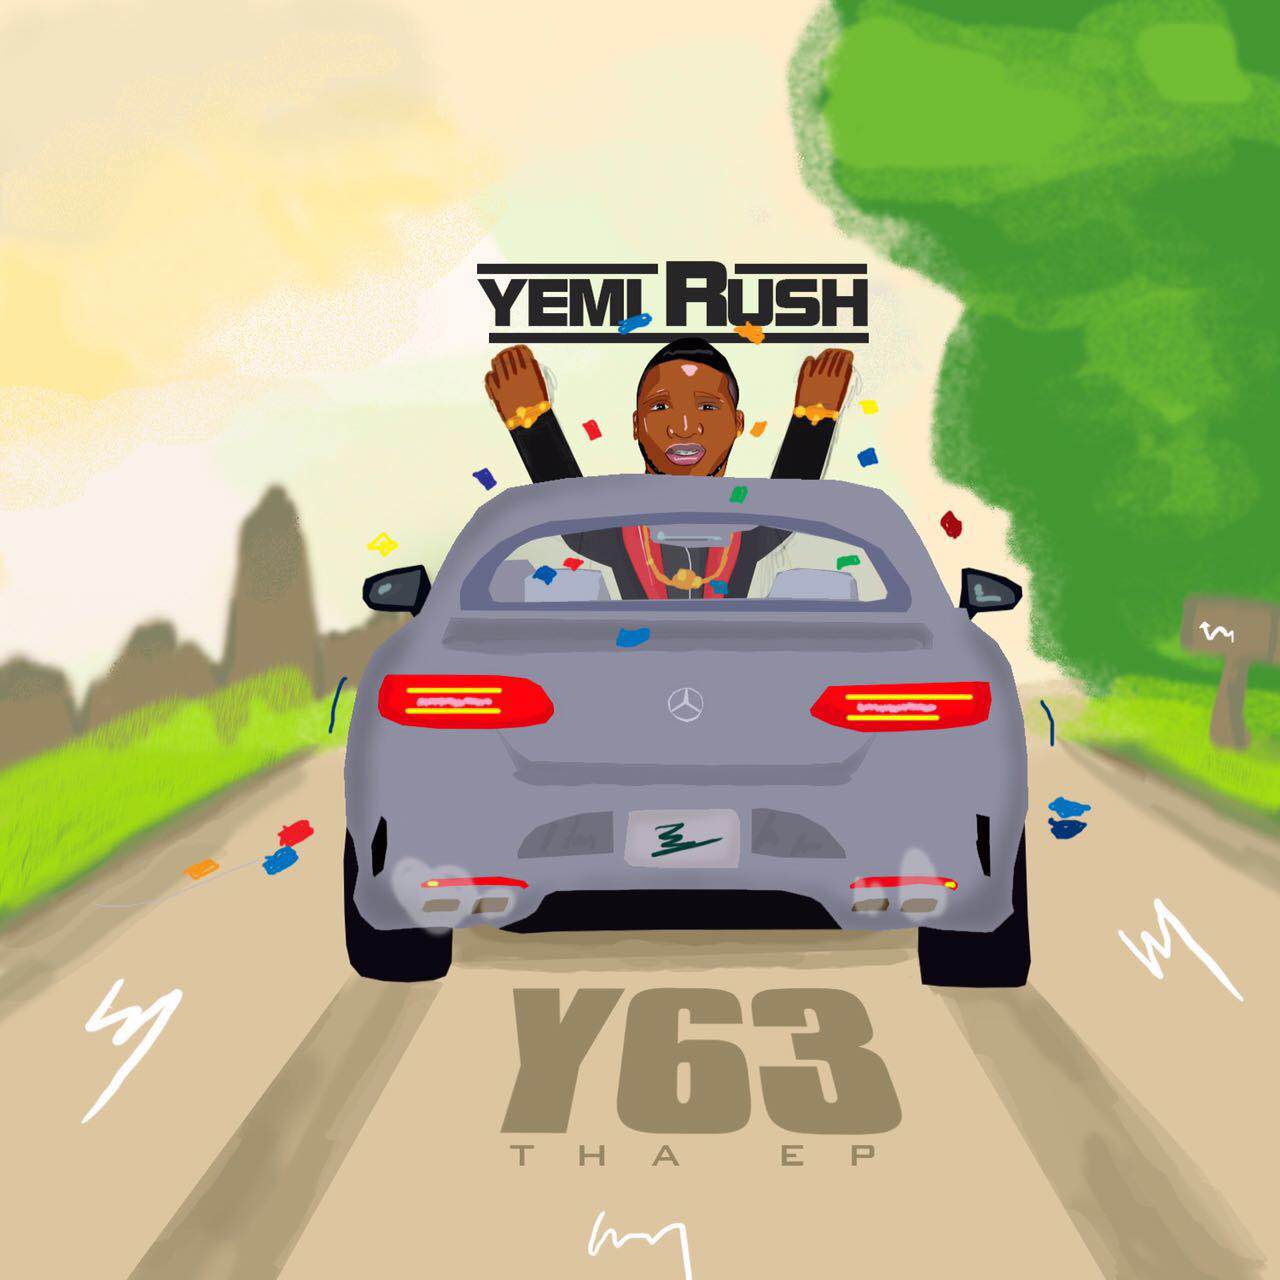 Yemi Rush - Fly | Y63 Tha EP